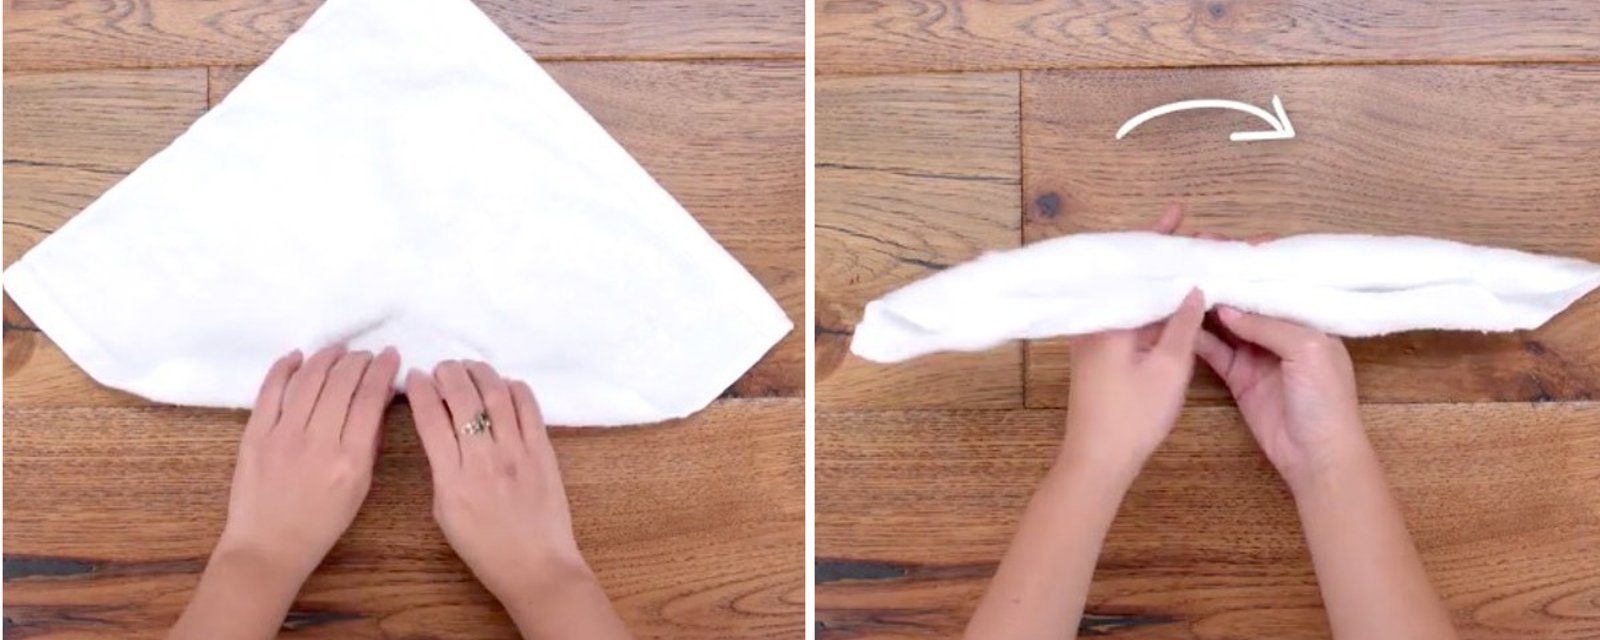 Comment fabriquer un adorable petit lapin avec une serviette en moins de 1 minute! 